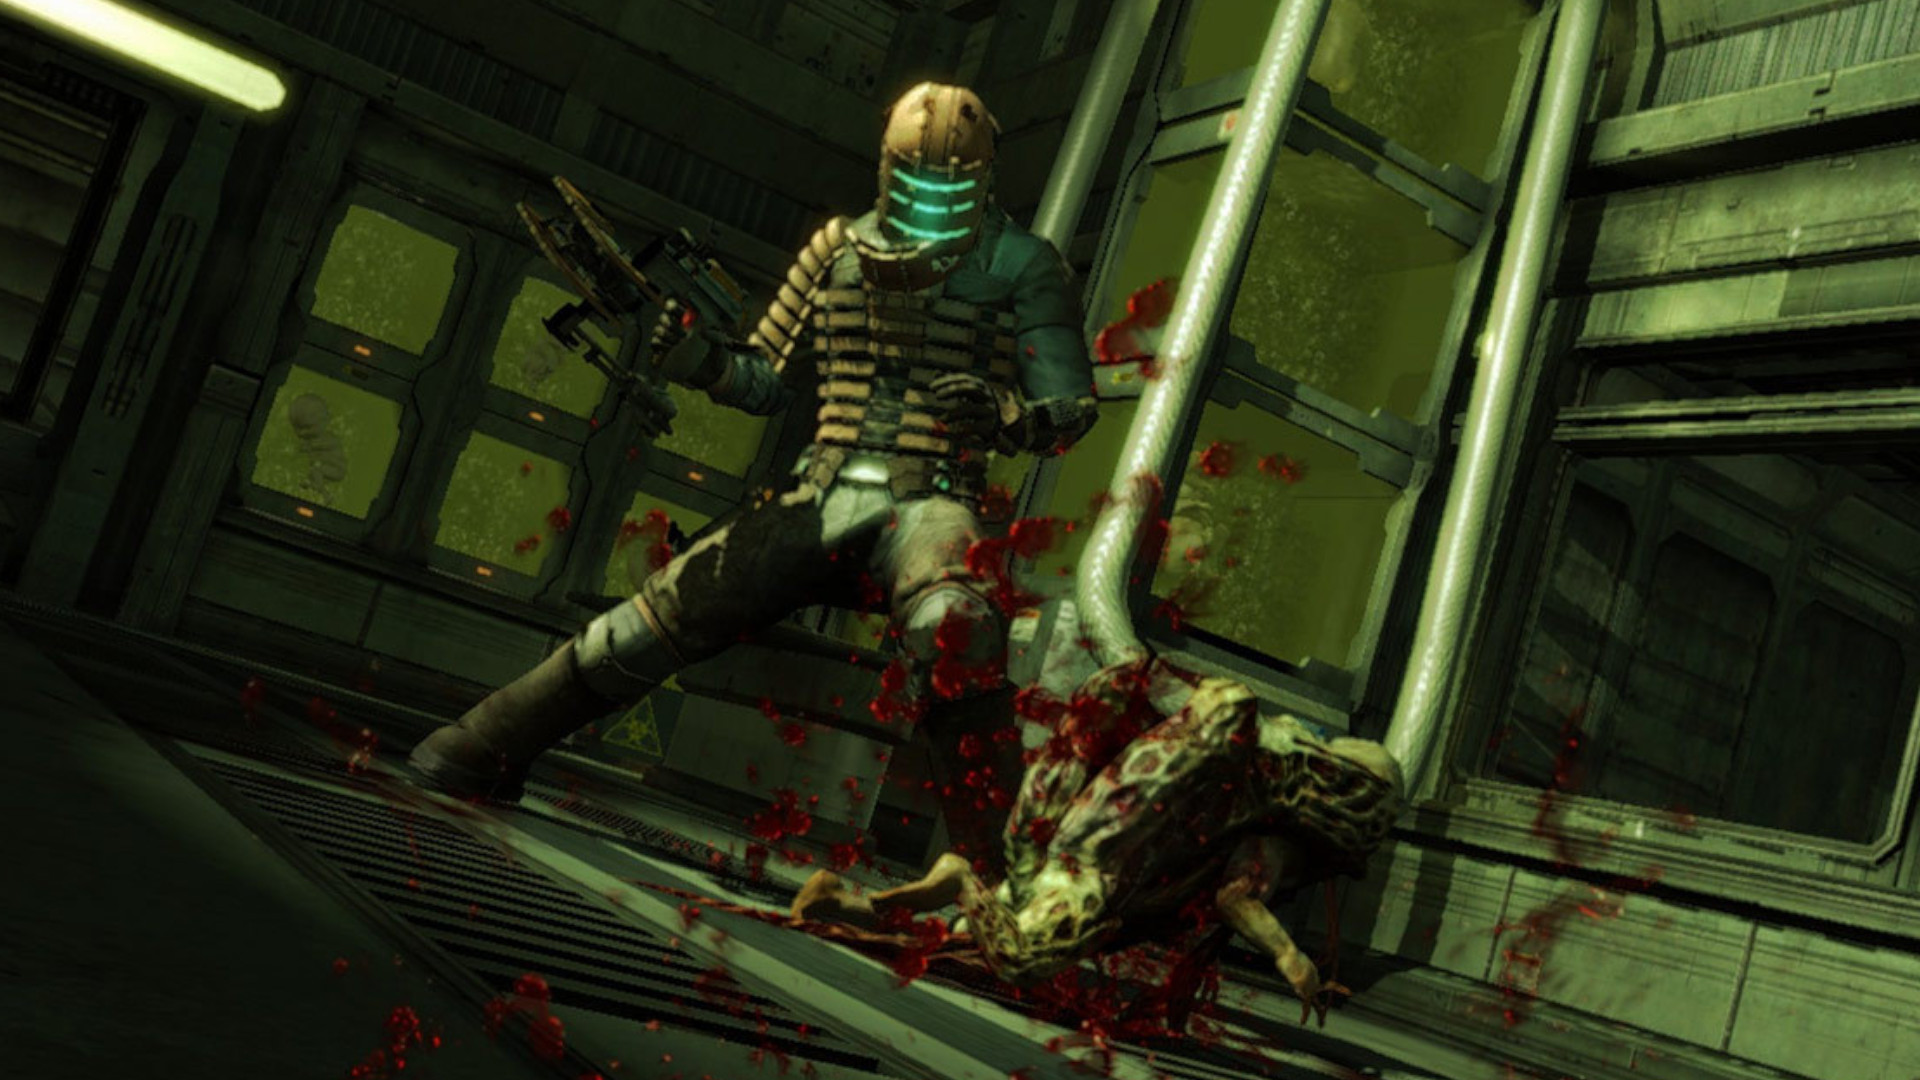 EA өзінің E3 емес баспасөз конференциясының мәліметтерін растайды, өйткені Dead Space туралы қауесеттер ұзаққа созылады